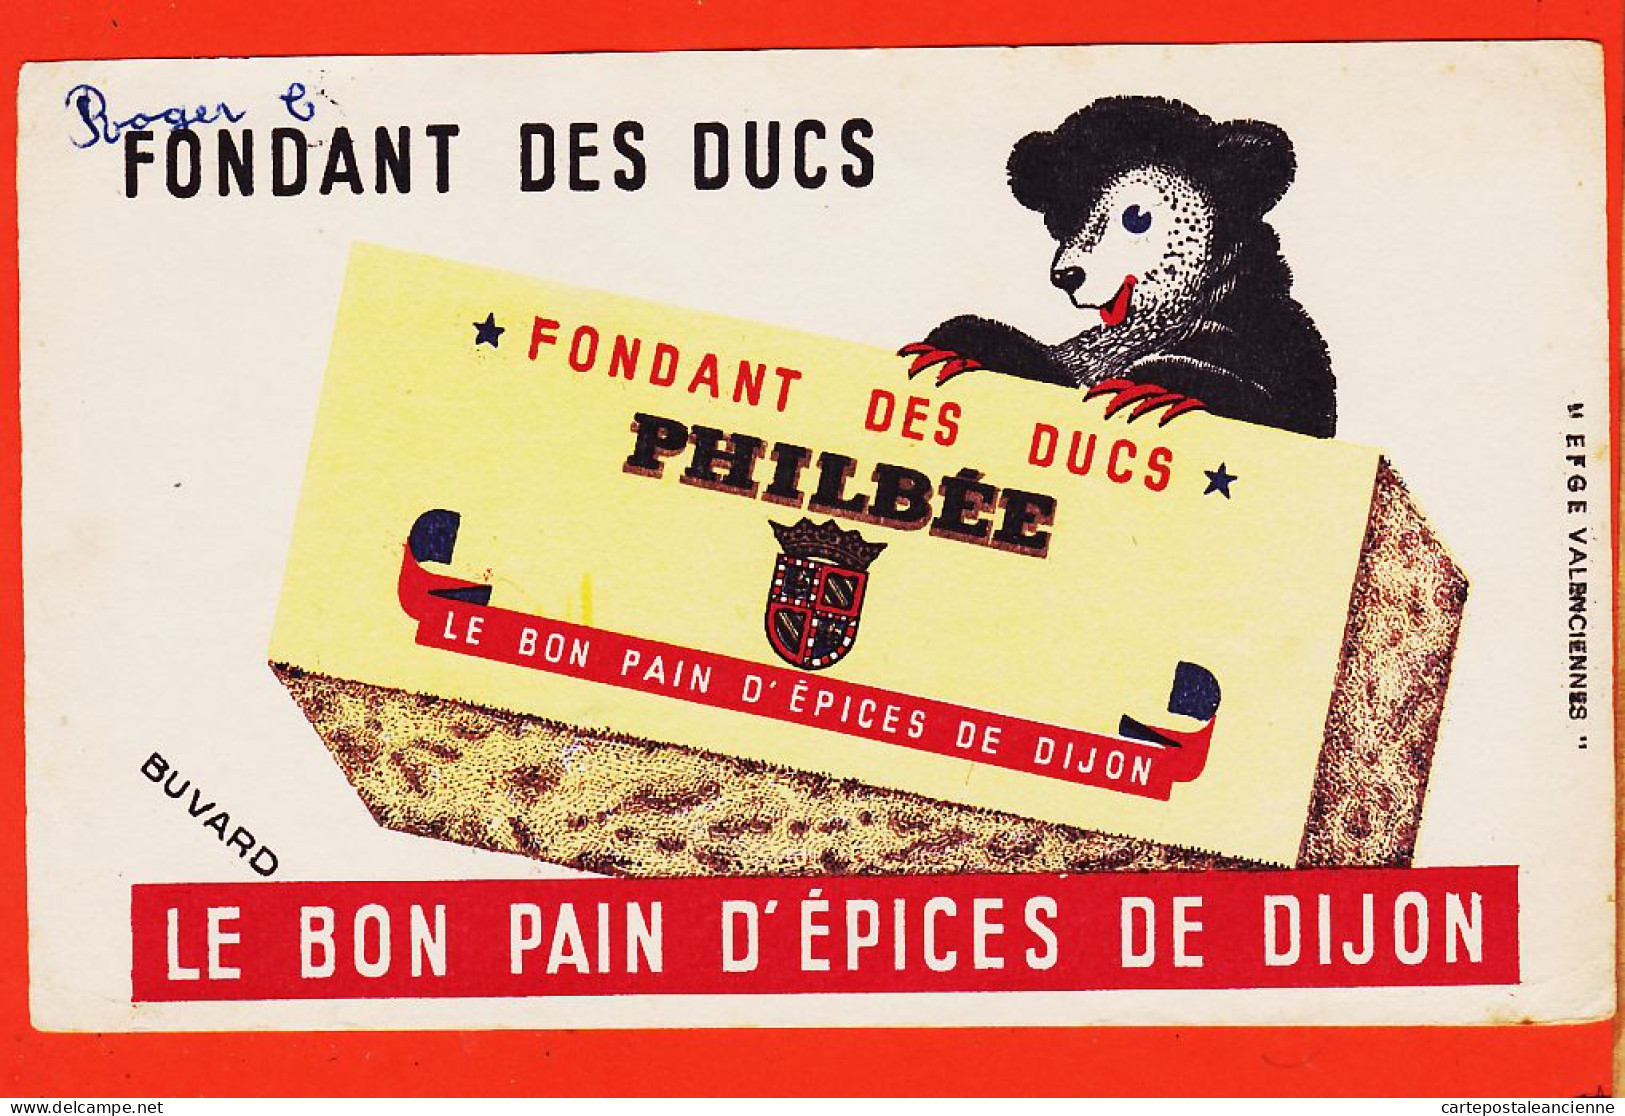 06186 / Fondant Des Ducs PHILBEE Le Bon Pain D'Epices De DIJON (21) Buvard-Blotter EFGE VALENCIENNES 59-Nord  - Gingerbread